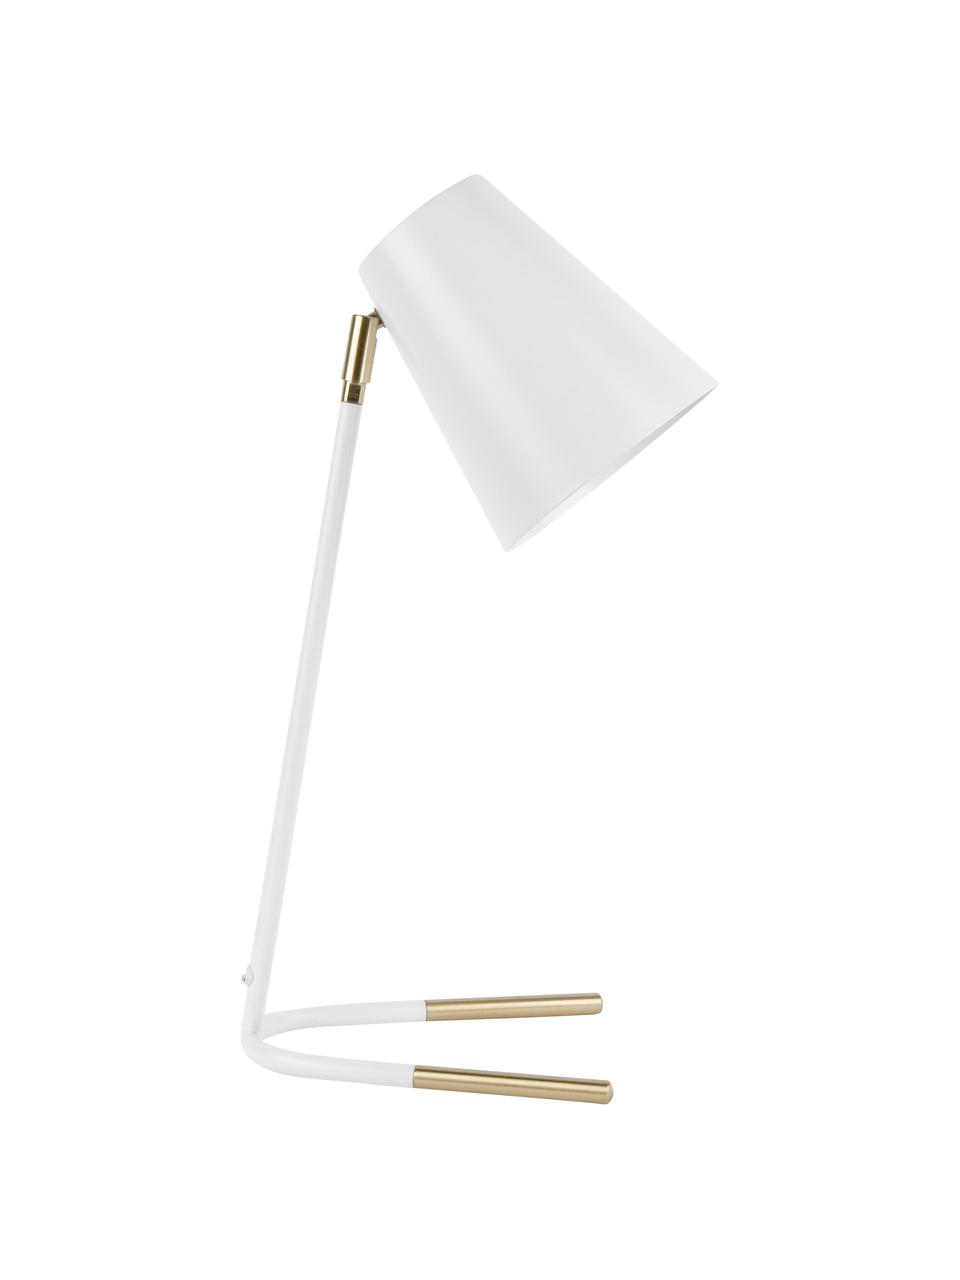 Schreibtischlampe Noble mit Gold-Dekor, Lampenschirm: Metall, beschichtet, Lampenfuß: Metall, beschichtet, Weiß, Goldfarben, 25 x 46 cm